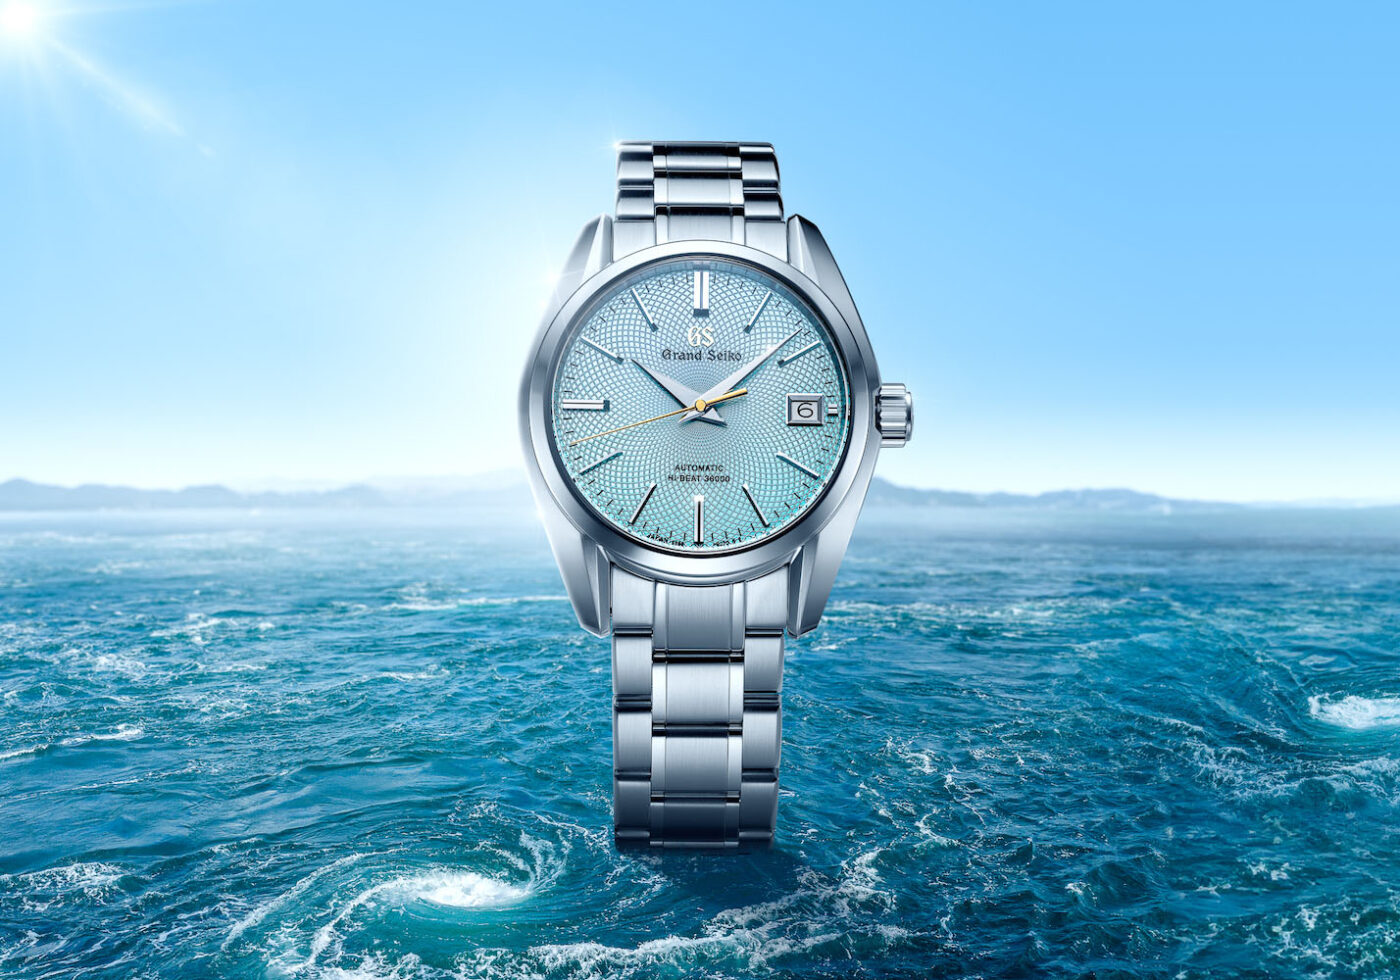 Grand Seiko lança um impressionante relógio de edição limitada... Apenas para o mercado australiano